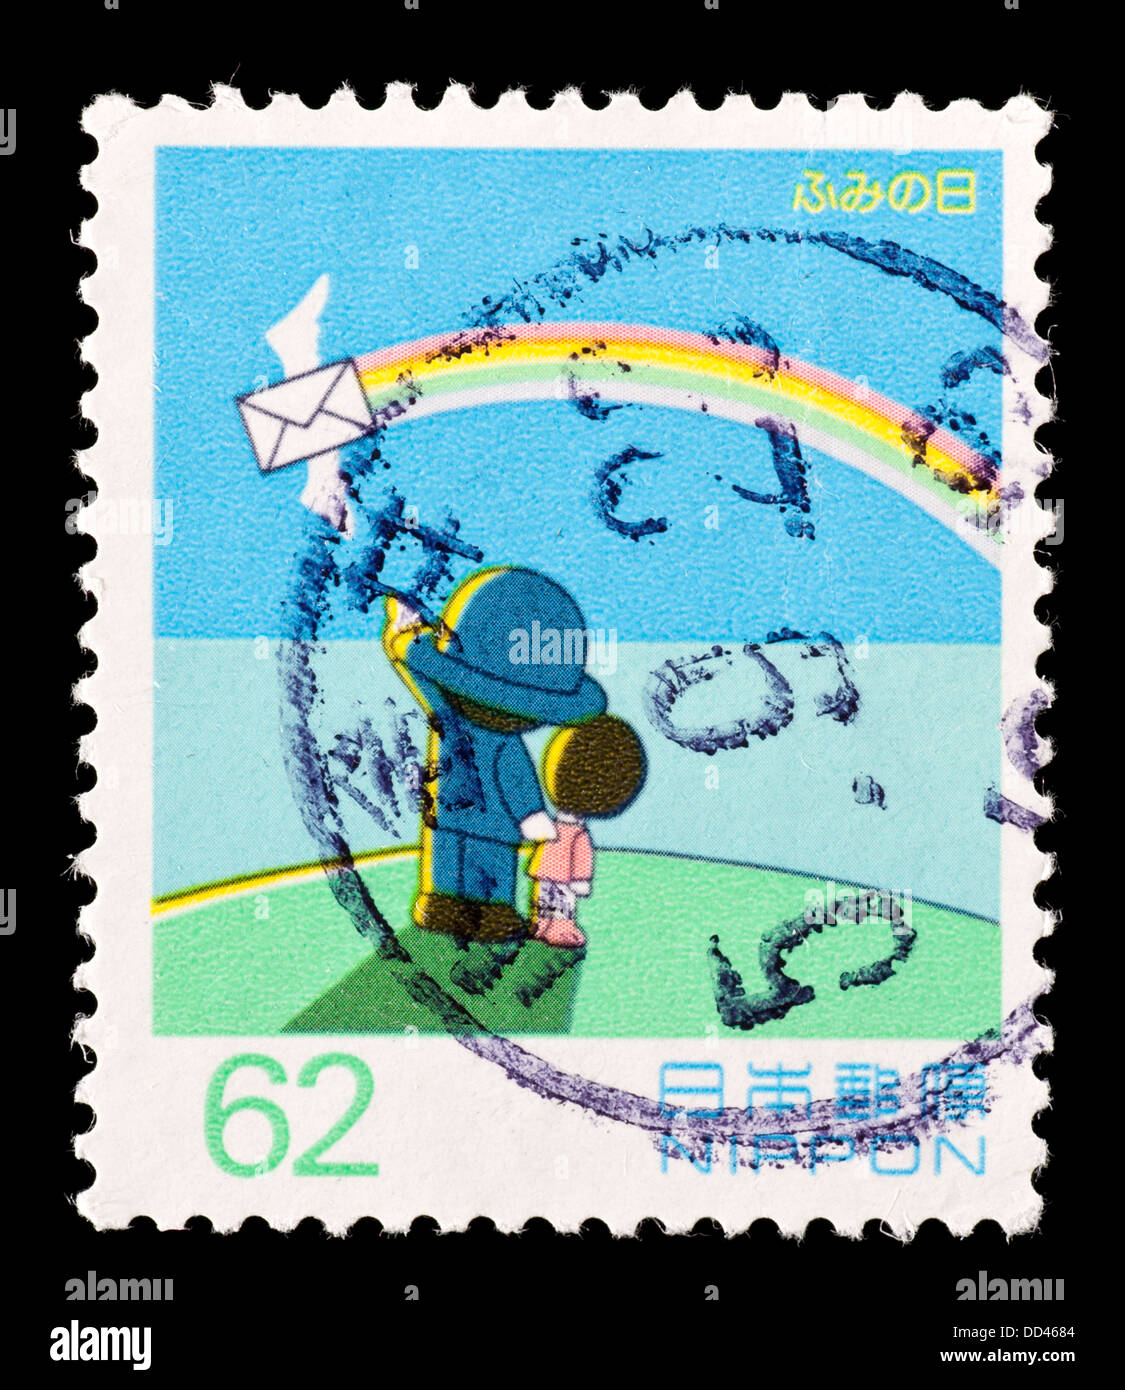 Francobollo dal Giappone che raffigura un ragazzo e una ragazza con una lettera alato e rainbow, rilasciati per la scrittura di lettere al giorno, 1993. Foto Stock